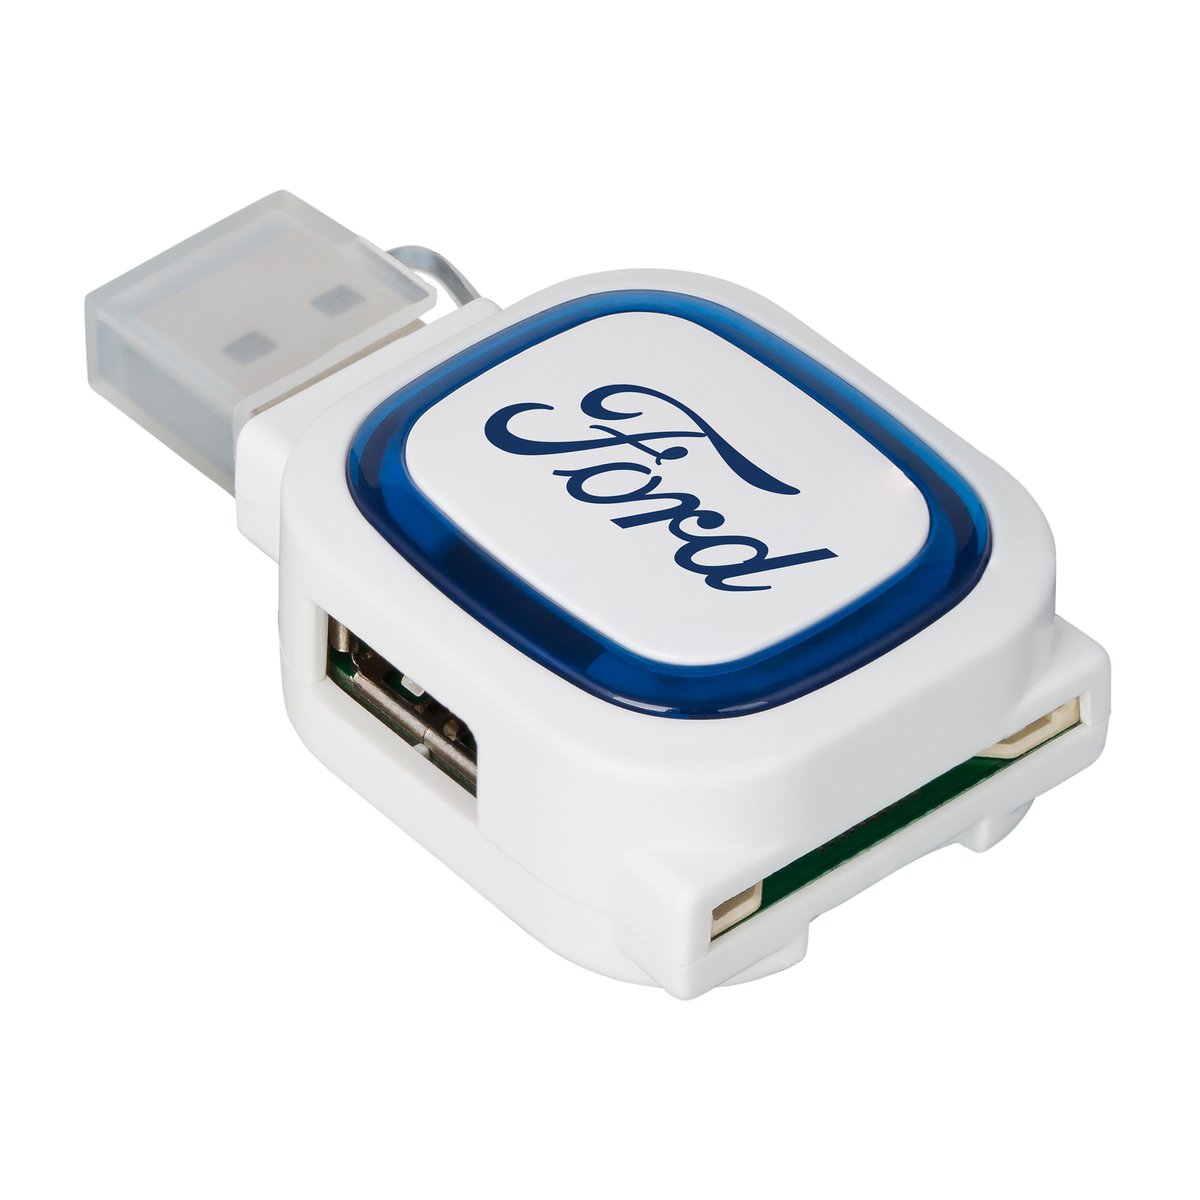 USB-Hub mit 2 Anschlüssen und Speicherkartenlesegerät COLLECTION 500 blau